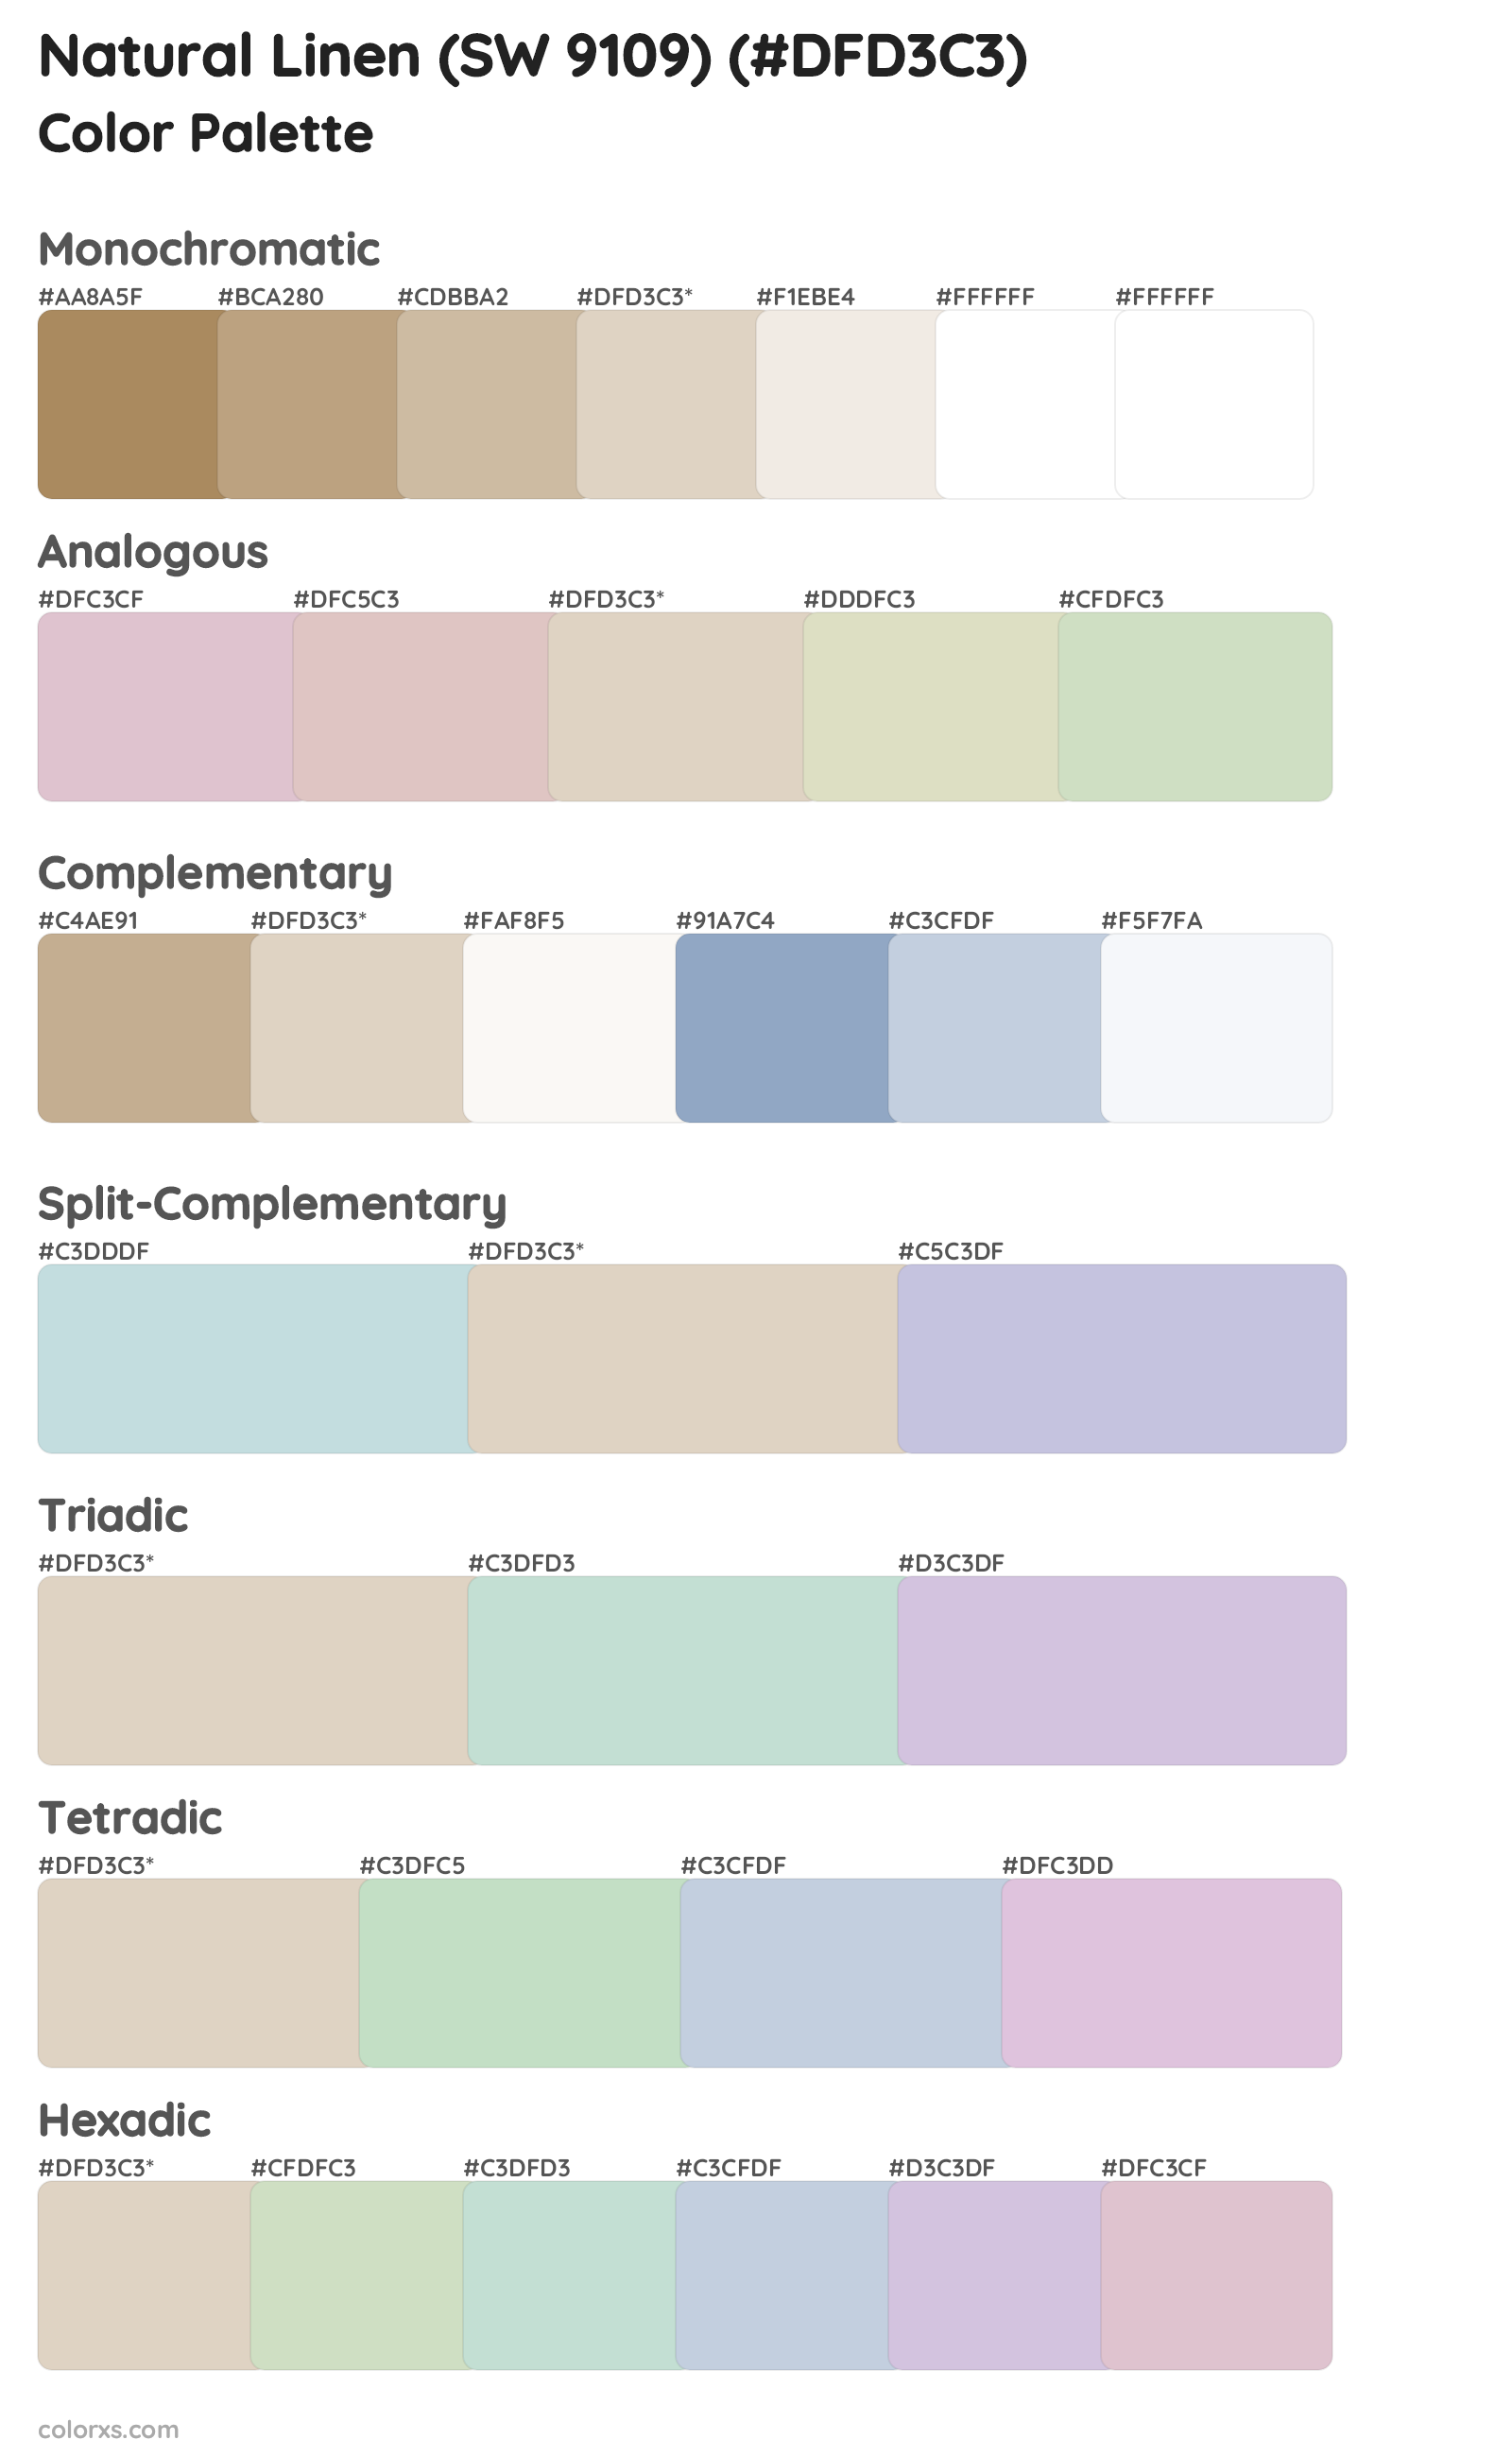 Natural Linen (SW 9109) Color Scheme Palettes